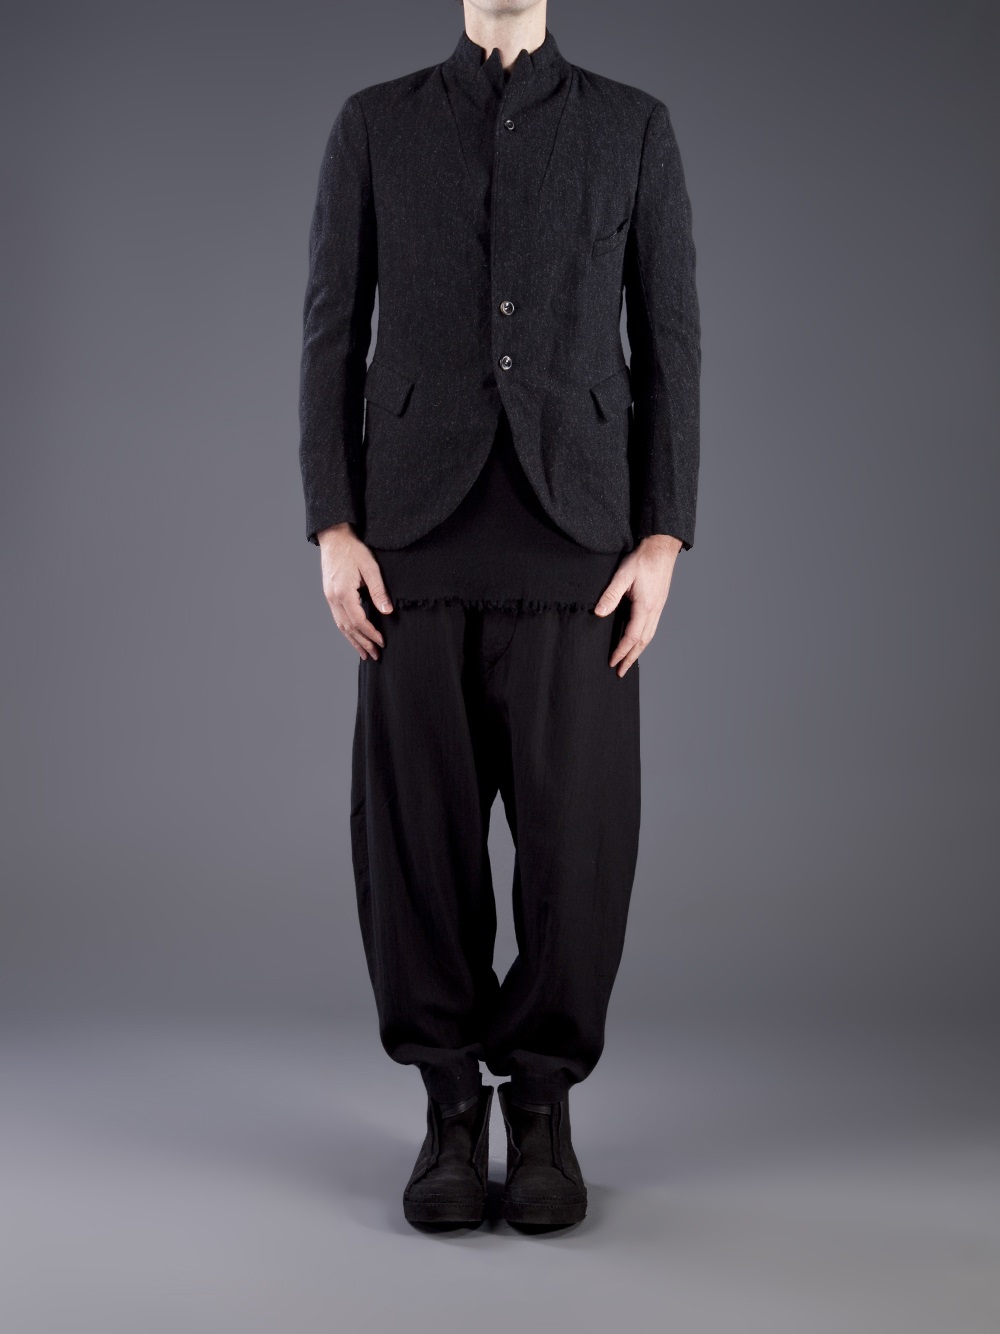 Ziggy Chen Wool Coat in Gray for Men - Lyst